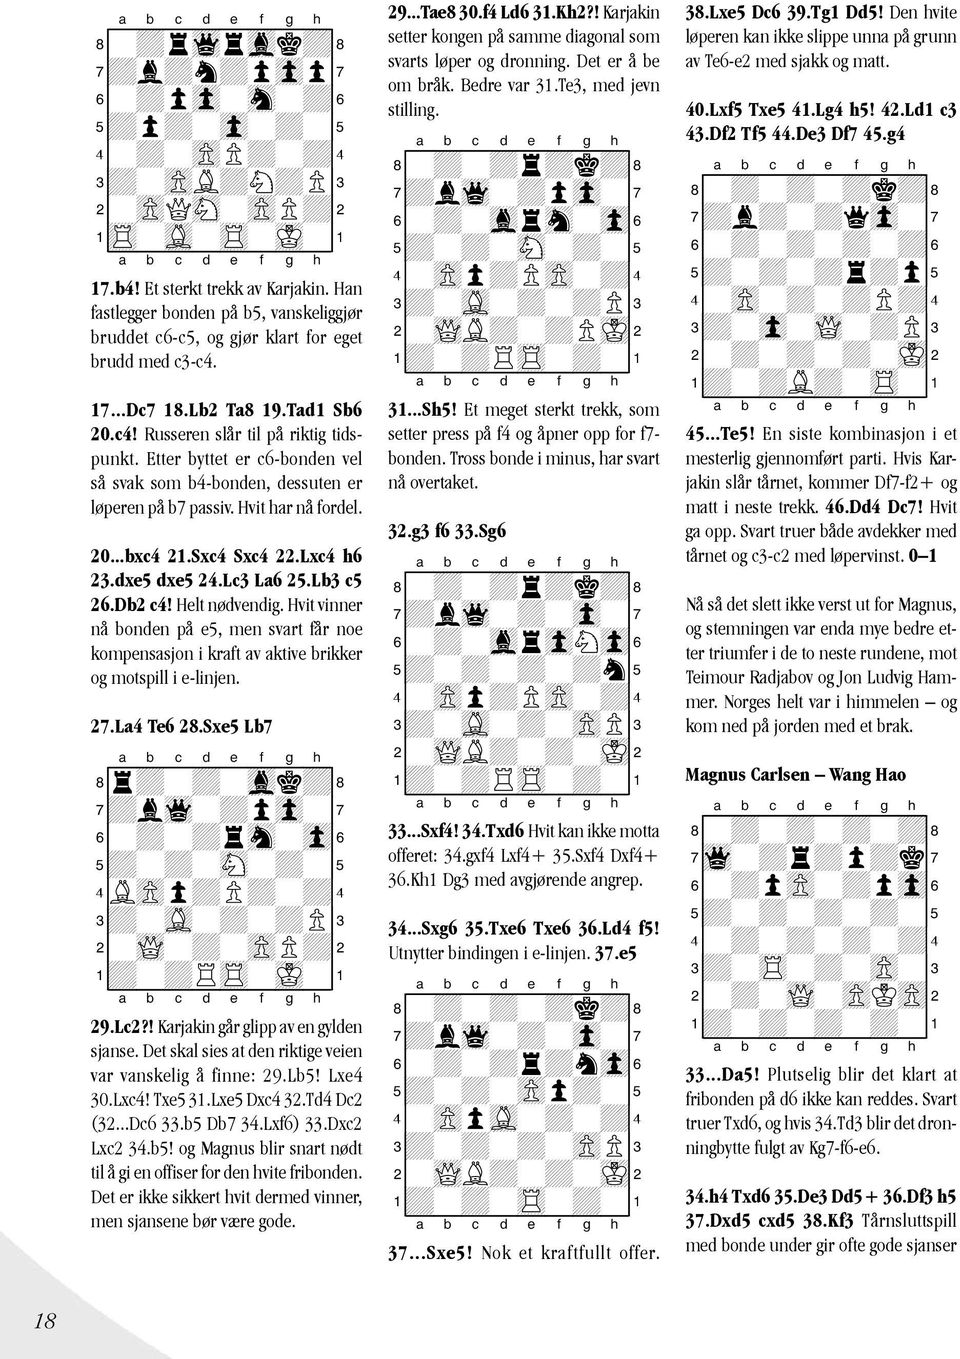 Etter byttet er c6-bonden vel så svak som b4-bonden, dessuten er løperen på b7 passiv. Hvit har nå fordel. 20...bxc4 21.Sxc4 Sxc4 22.Lxc4 h6 23.dxe5 dxe5 24.Lc3 La6 25.Lb3 c5 26.Db2 c4!